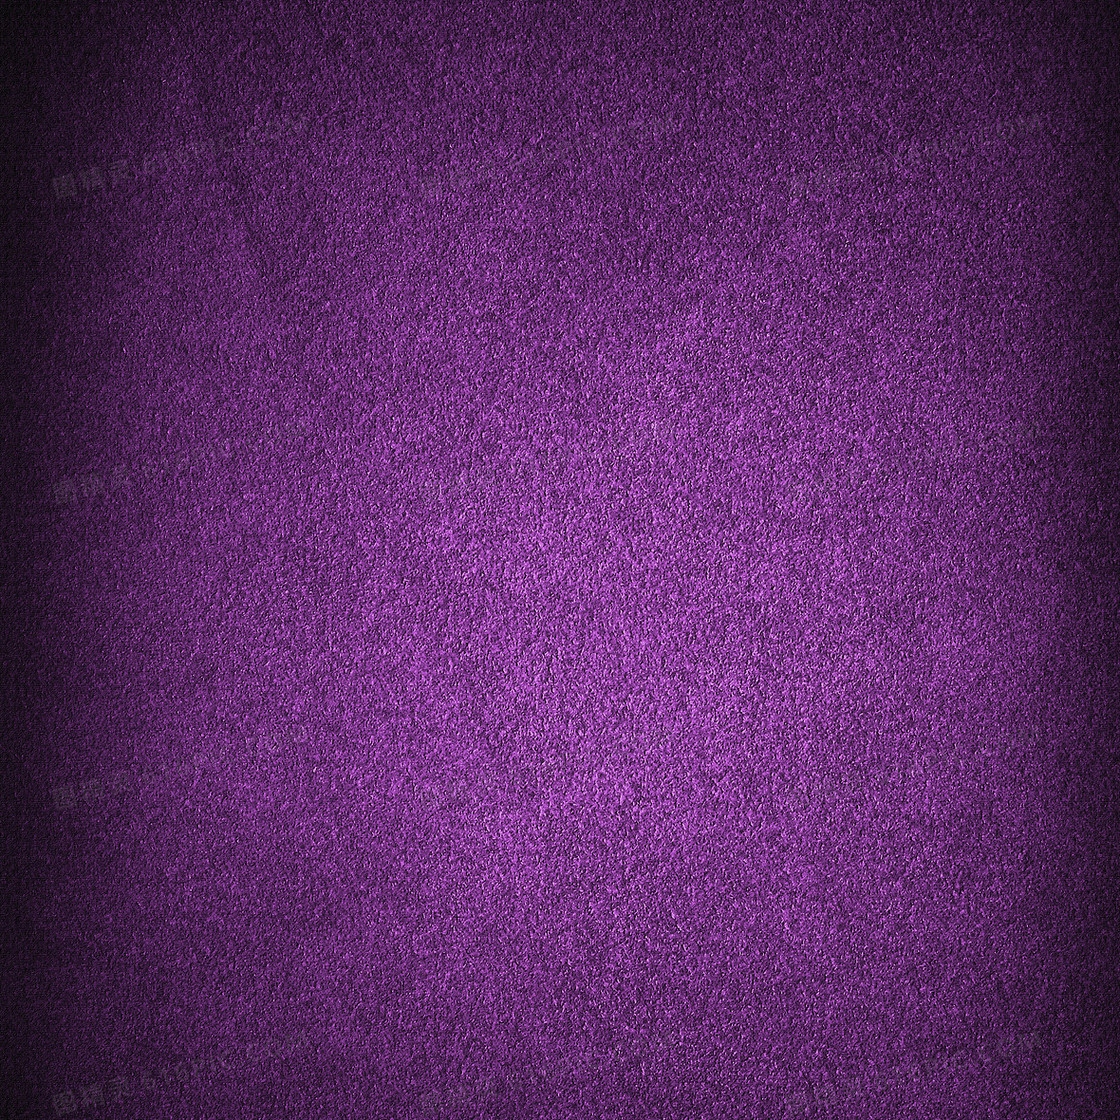 10,000+张最精彩的“紫”图片 · 100%免费下载 · Pexels素材图片